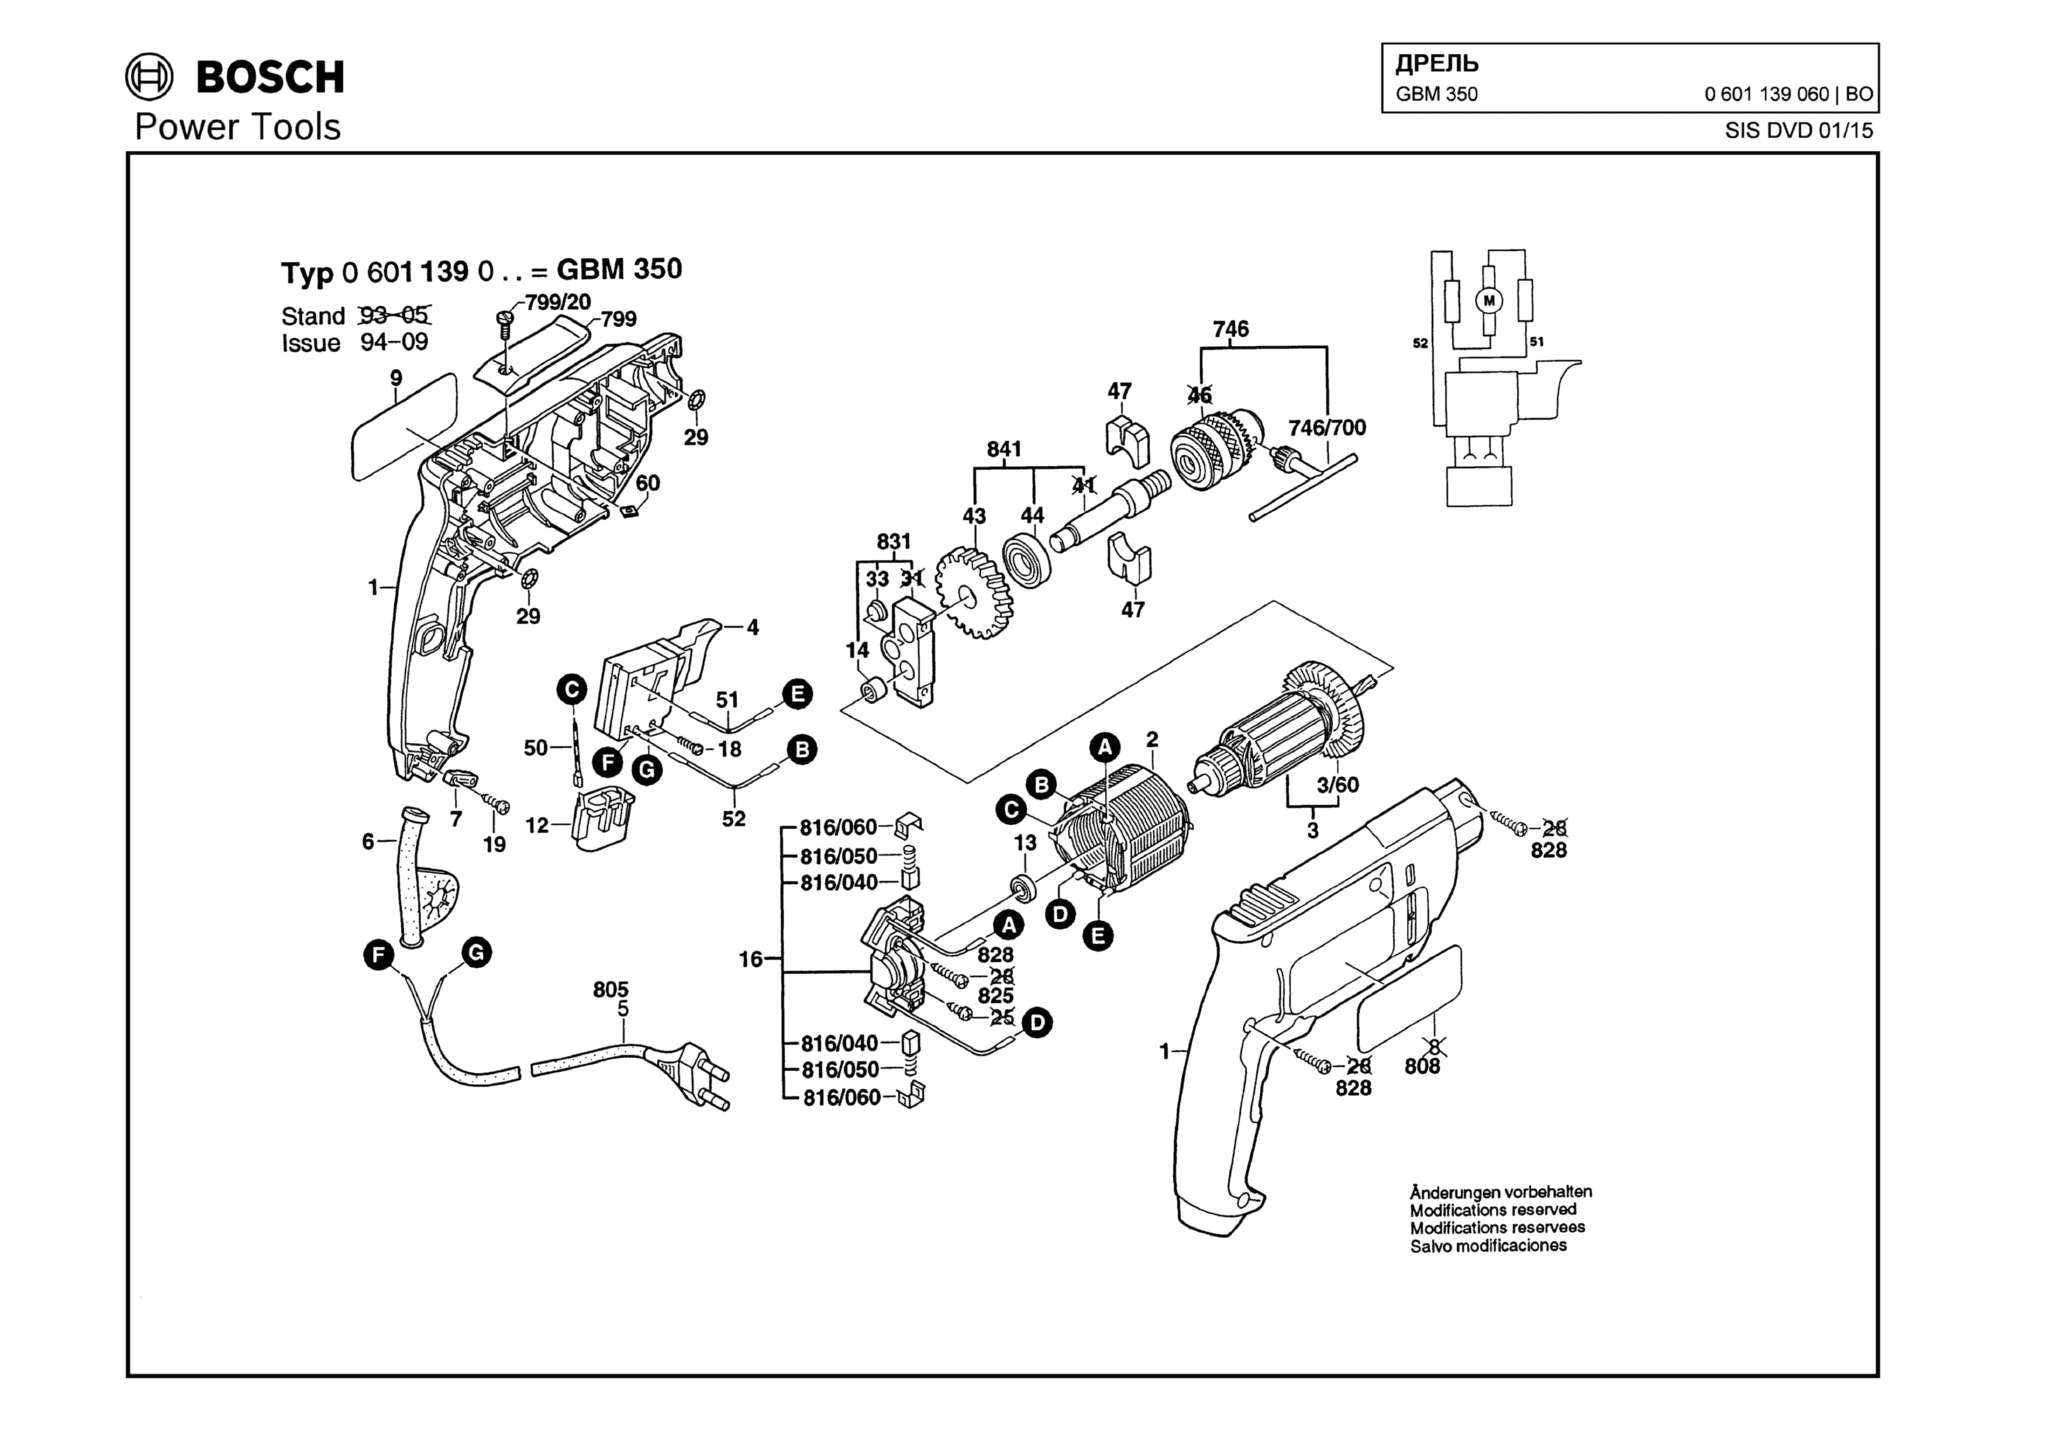 Запчасти, схема и деталировка Bosch GBM 350 (ТИП 0601139060)